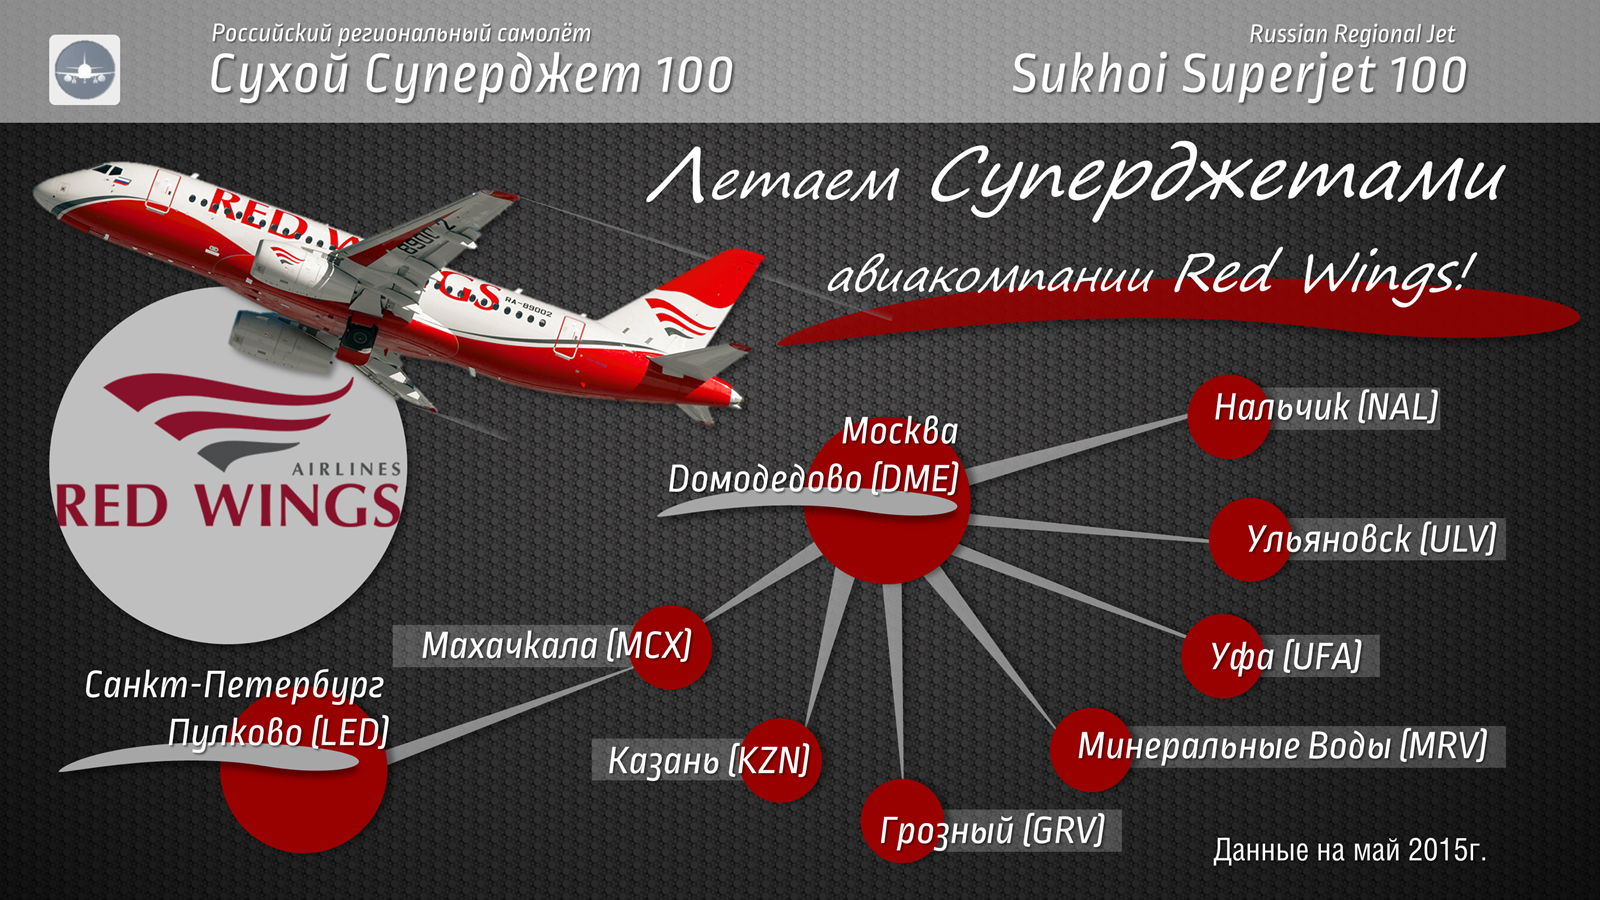 Купить авиабилеты на самолет ред вингс. Суперджет 100 самолет ред Вингс. Сухой Суперджет 100 ред Вингс салон. Red Wings салон самолета сухой Суперджет 100. Sukhoi Superjet 100 Red Wings схема.